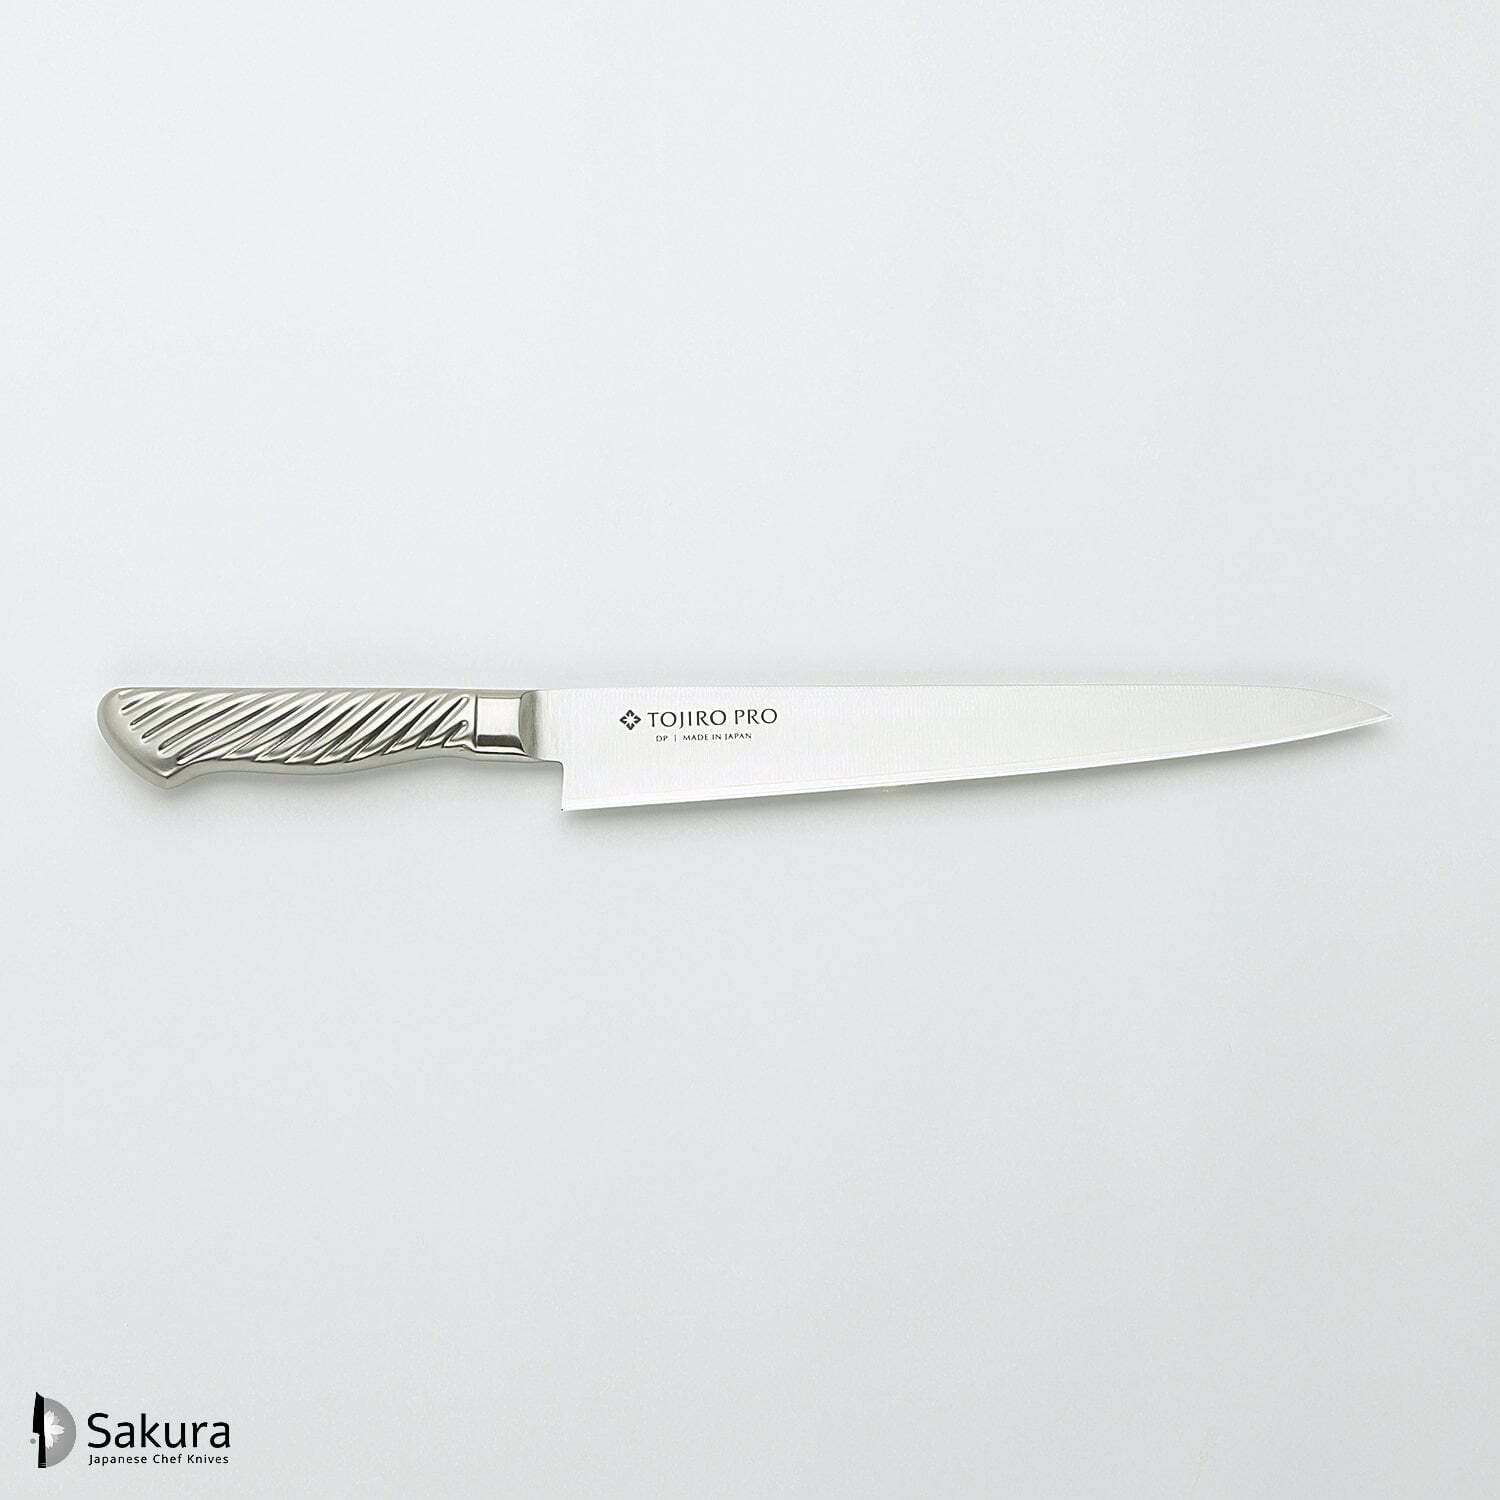 סכין חיתוך ופריסת בשר סוּגִּ’יהִיקִי 240מ״מ מחוזקת 3 שכבות: פלדת פחמן יפנית VG-10 עטופה פלדת אל-חלד גימור מט מלוטש טוג׳ירו יפן